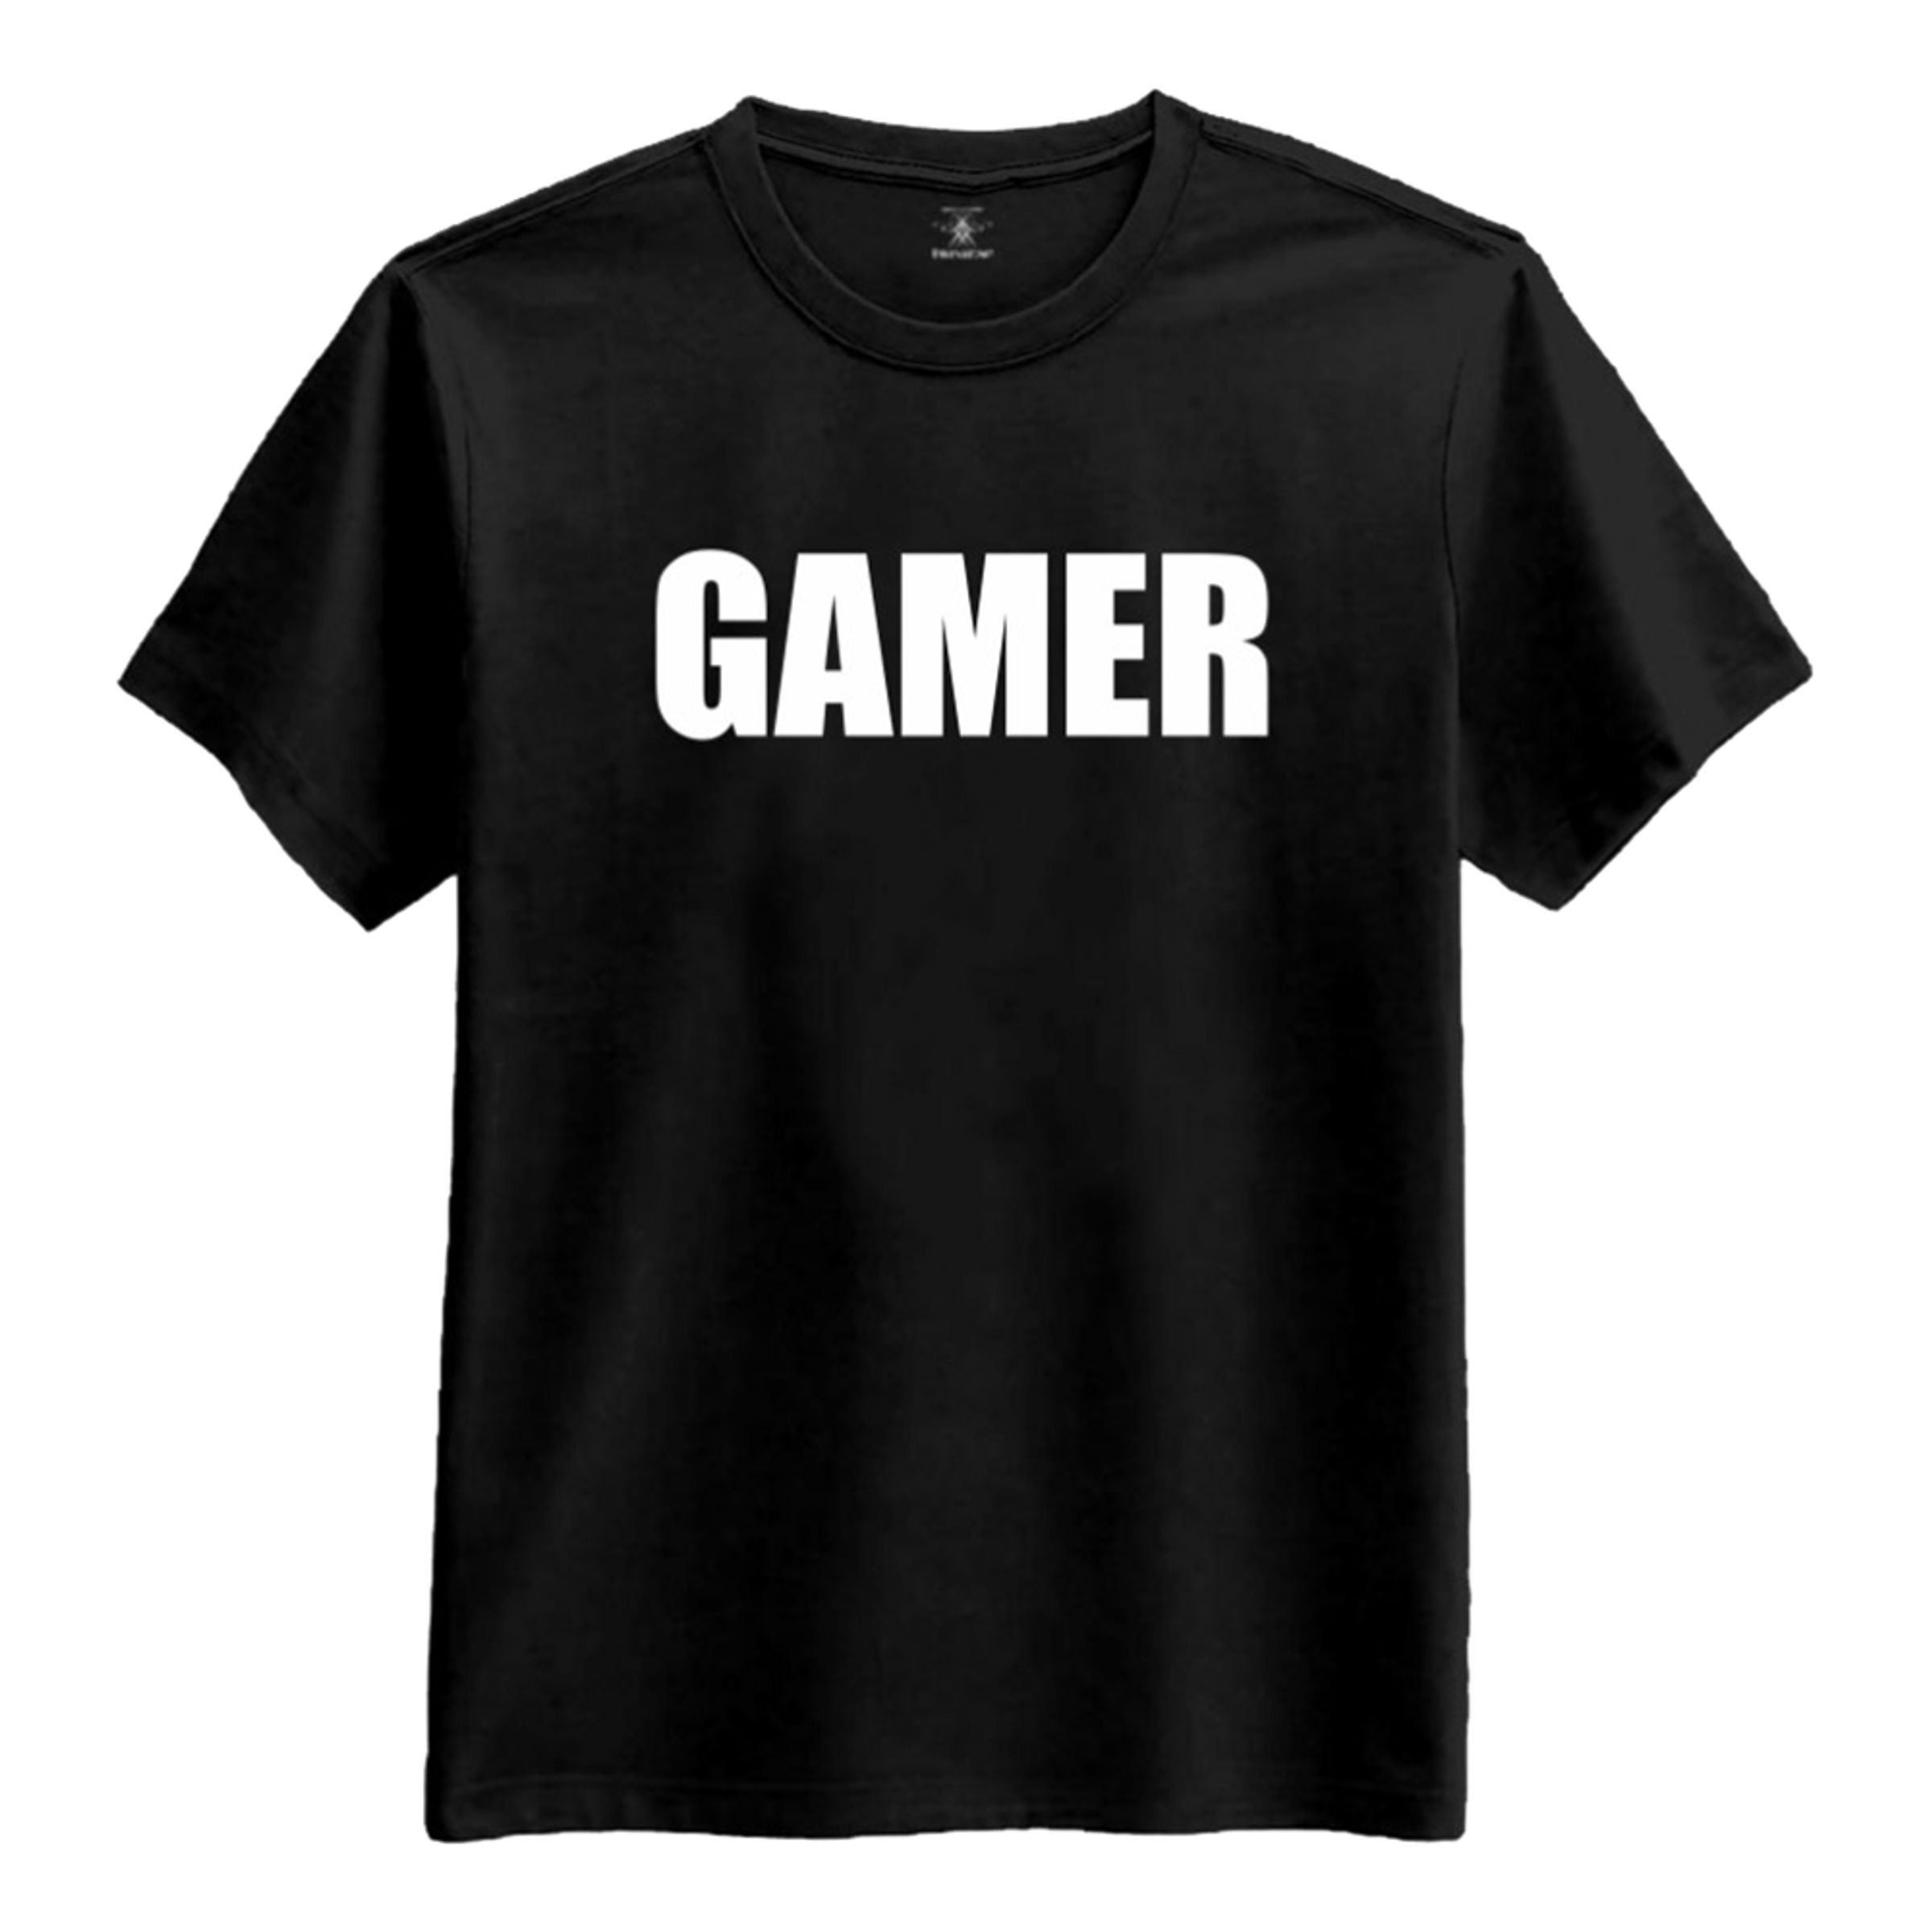 Gamer T-shirt - Large